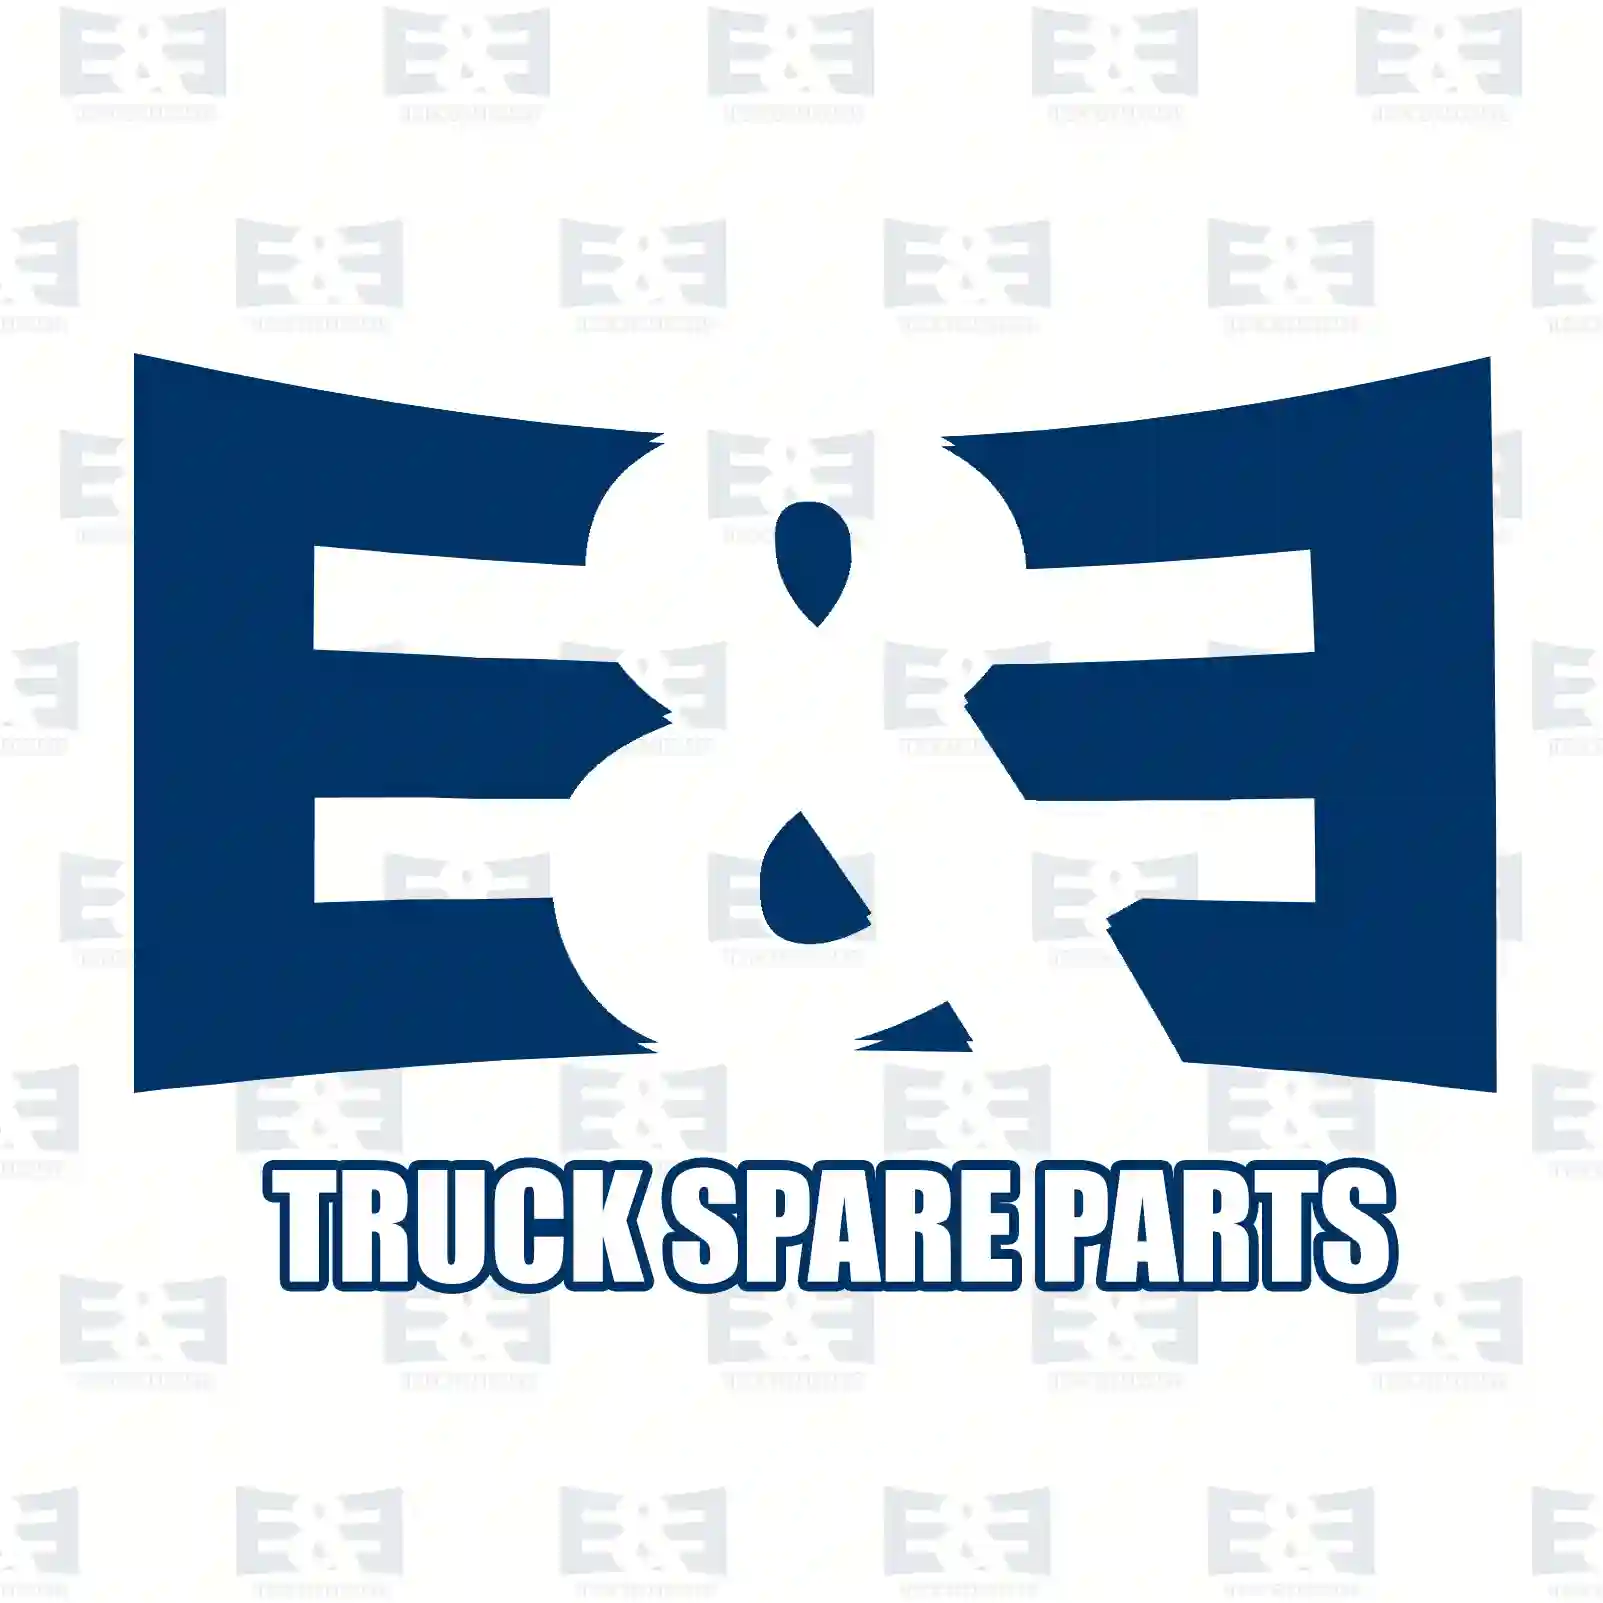 General overhaul kit, 2E2207565, 2996291, 2996291 ||  2E2207565 E&E Truck Spare Parts | Truck Spare Parts, Auotomotive Spare Parts General overhaul kit, 2E2207565, 2996291, 2996291 ||  2E2207565 E&E Truck Spare Parts | Truck Spare Parts, Auotomotive Spare Parts